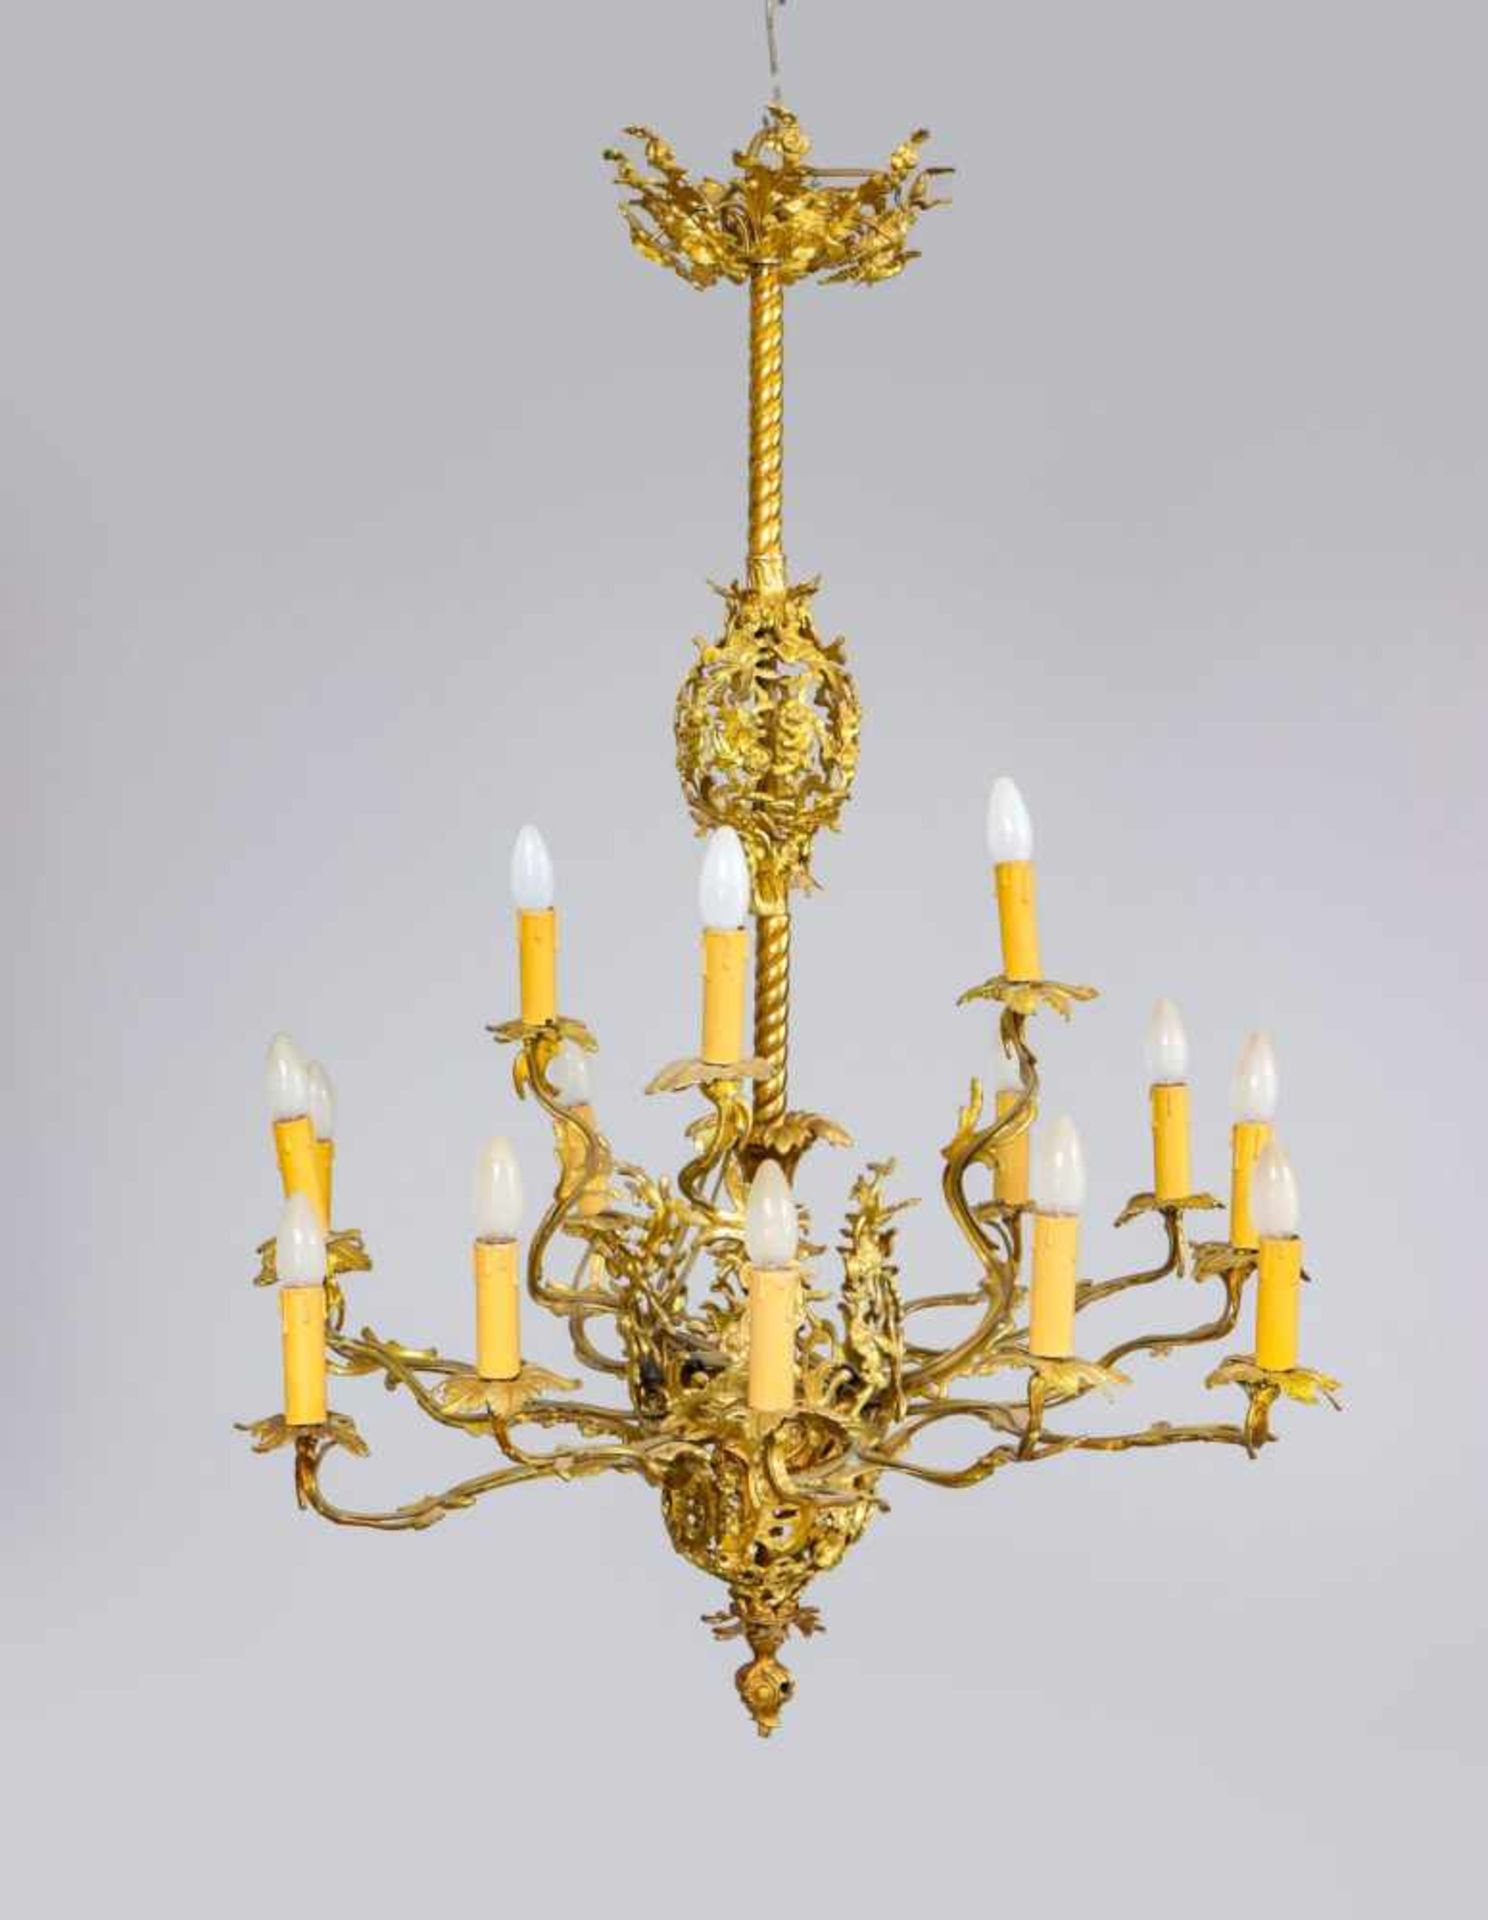 Französische Deckenkrone des 19. JahrhundertsBronze, vergoldet, 15-flammig, Formensprache des